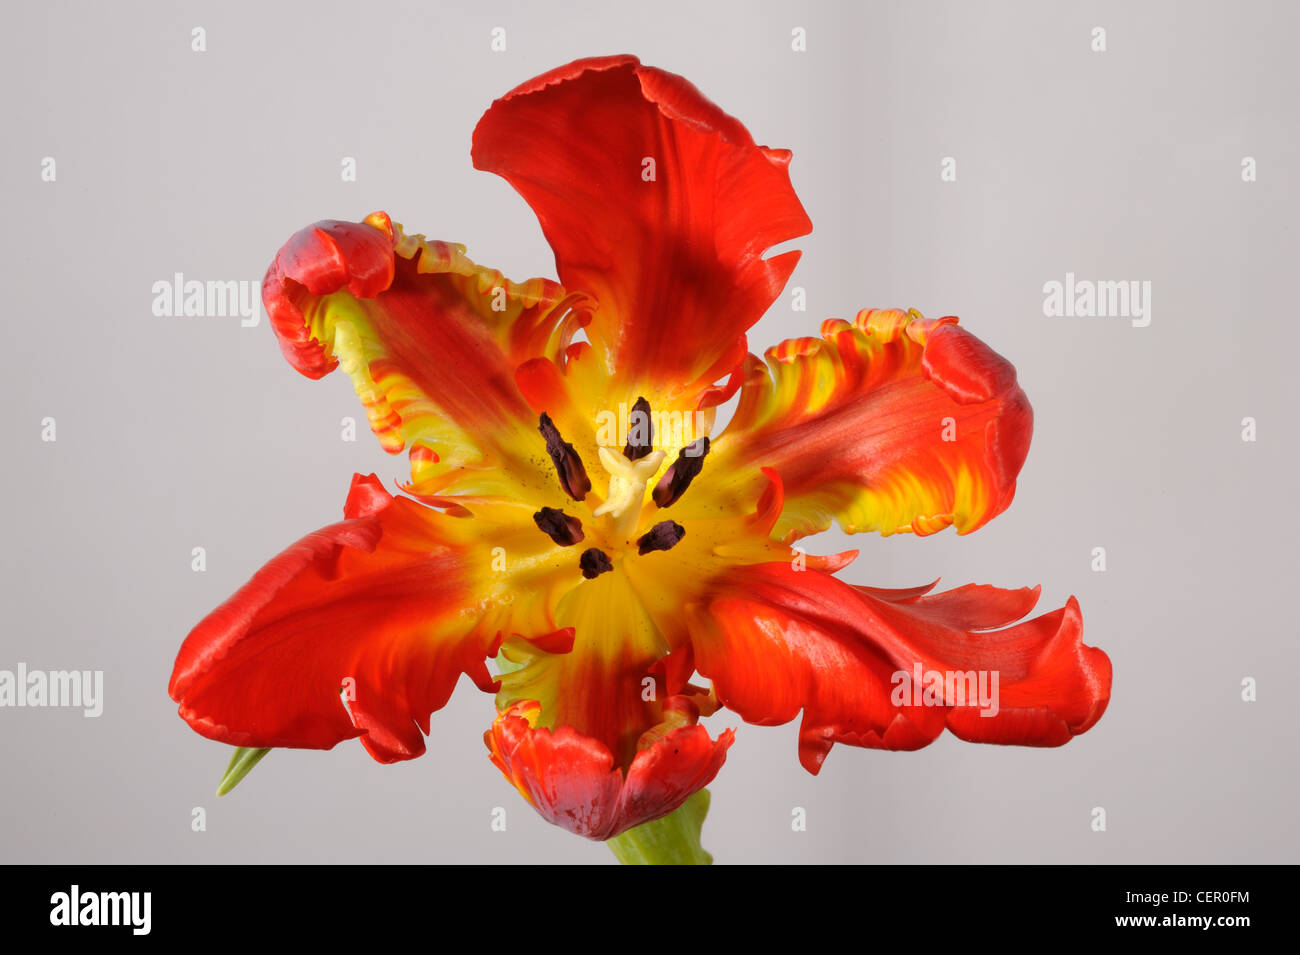 Orange Rouge fleur fleurs tulipes perroquet, les étamines et les stigmates Banque D'Images